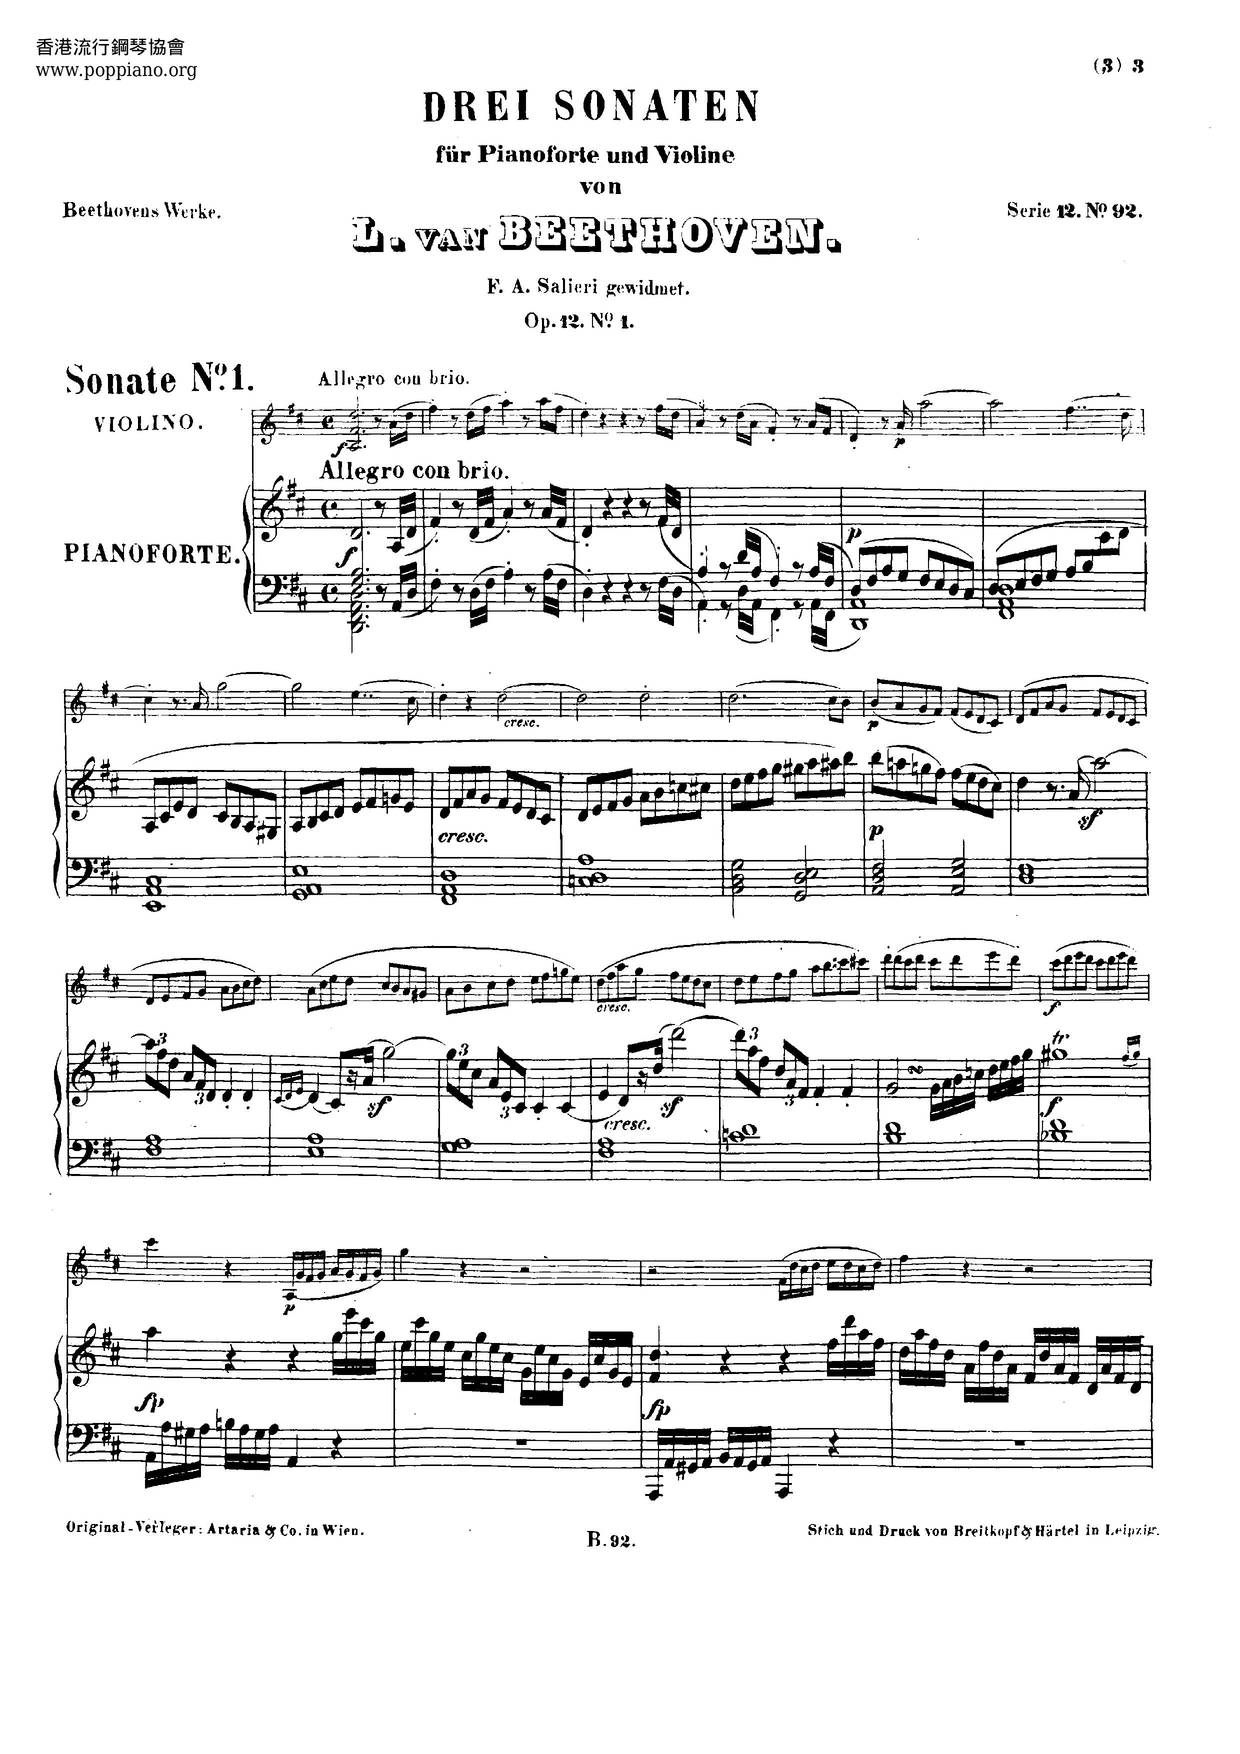 Violin Sonata No. 1, Op. 12 No. 1 Score